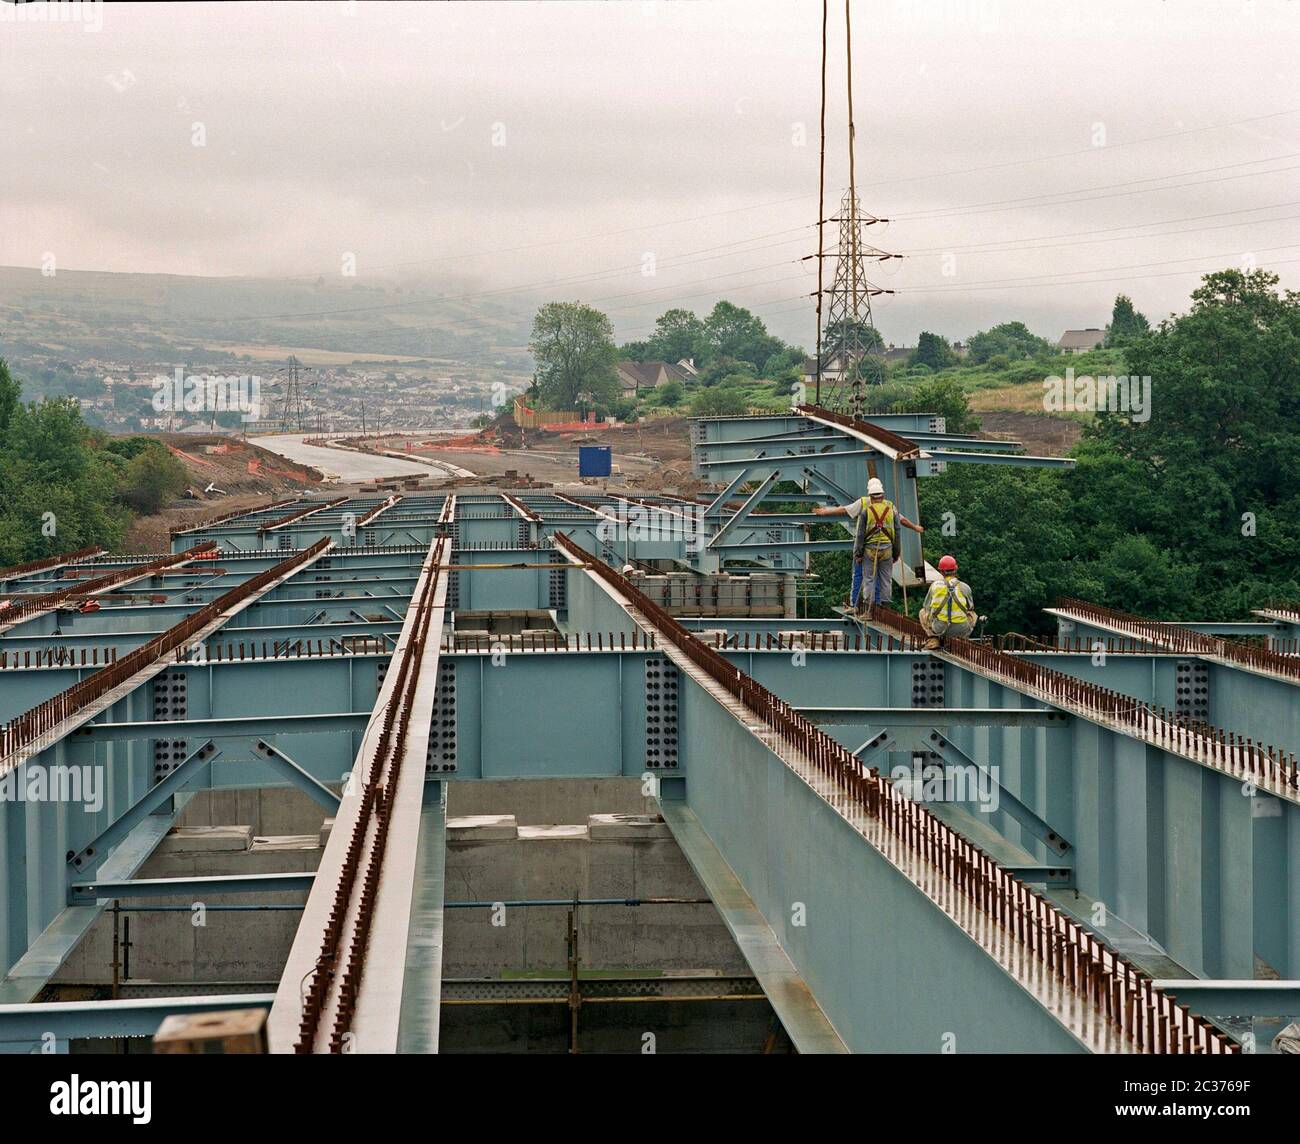 La construction d'un viaduc routier, sur la voie de contournement de Merthyr Tydfil, au sud du pays de Galles, au Royaume-Uni en 1996 Banque D'Images